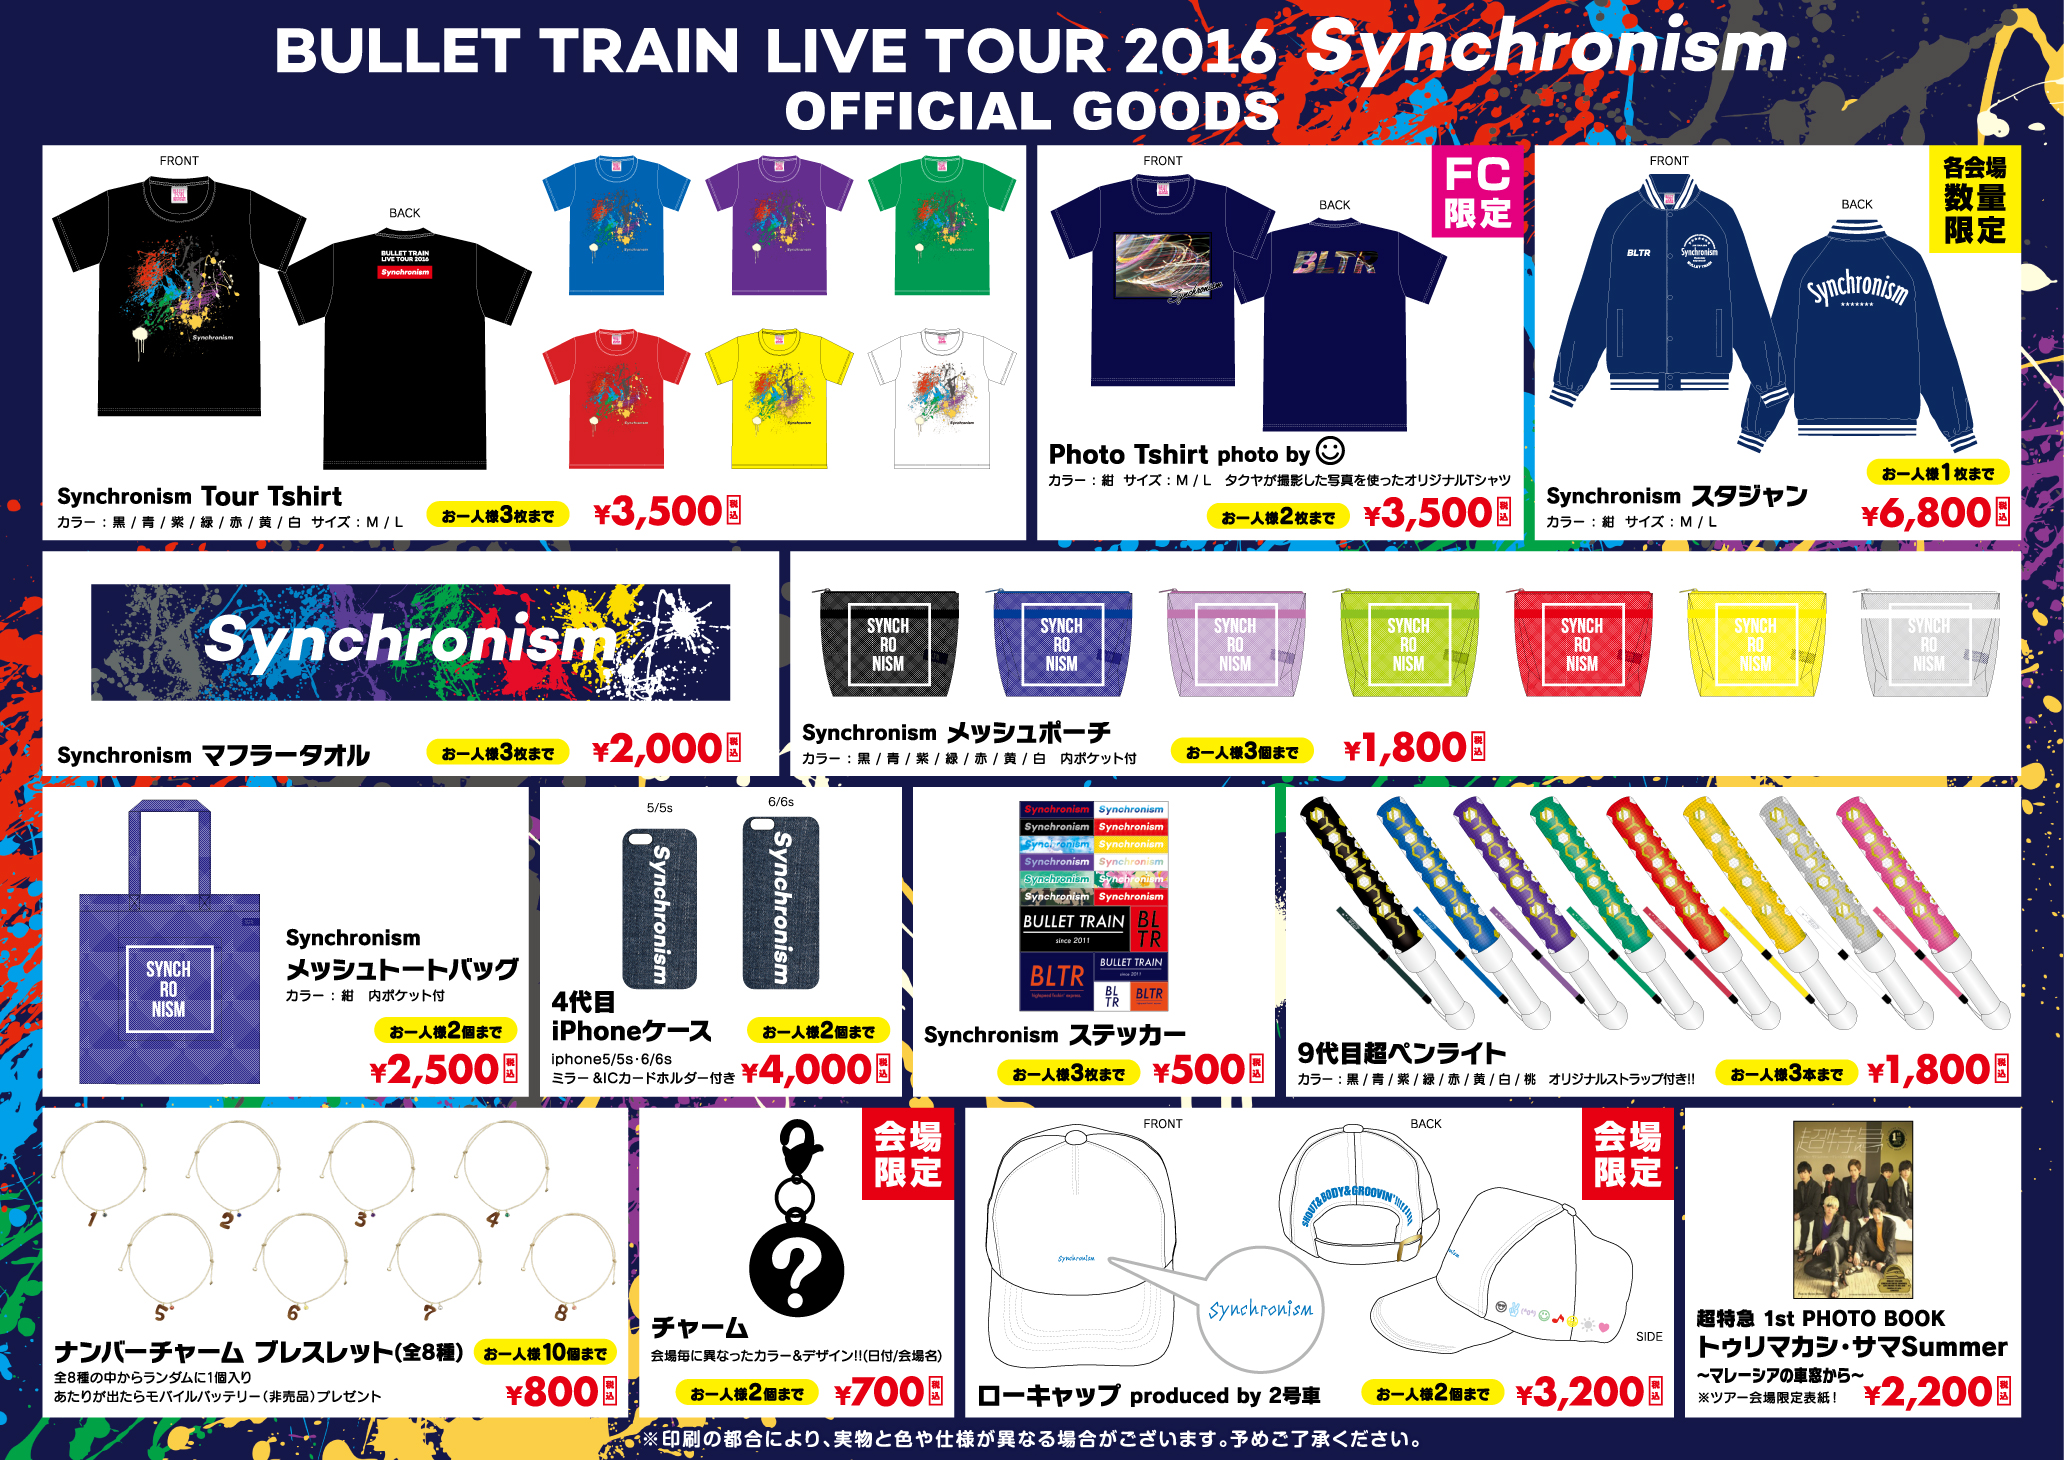 超特急 LIVE TOUR 2016 Synchronism」LIVEグッズラインナップ公開 